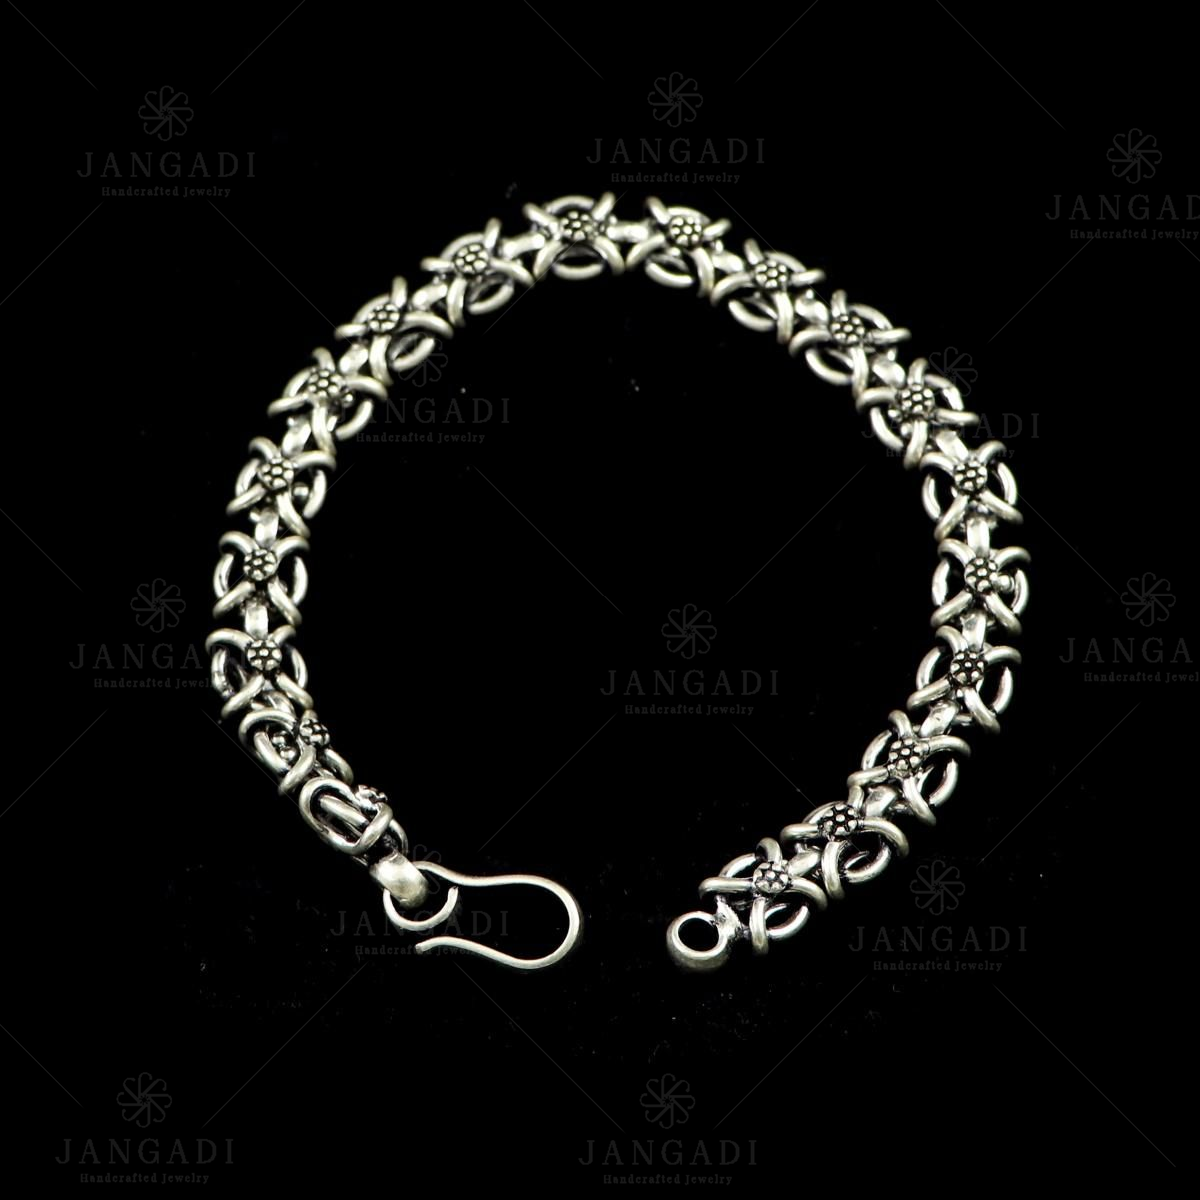 Macy's Men's Curb Chain Bracelet in Sterling Silver - Macy's